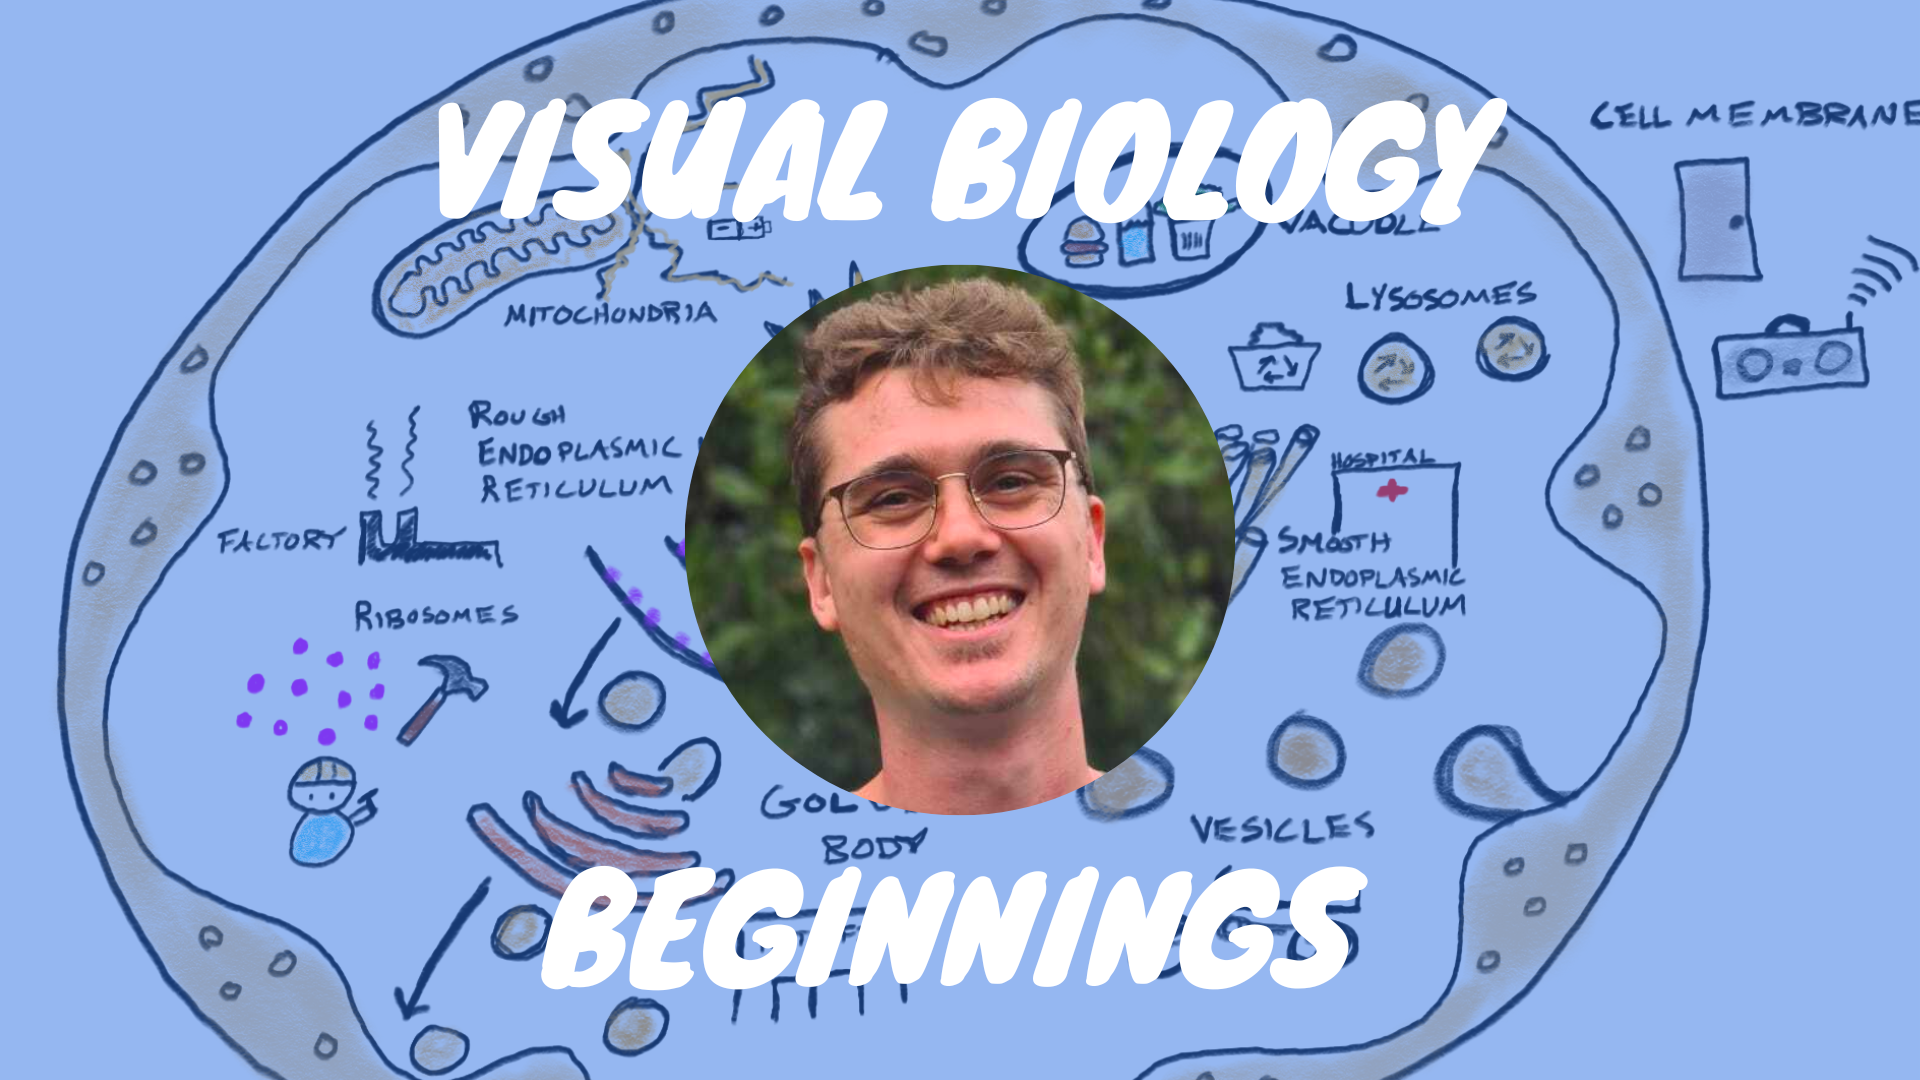 Visual Biology Beginnings